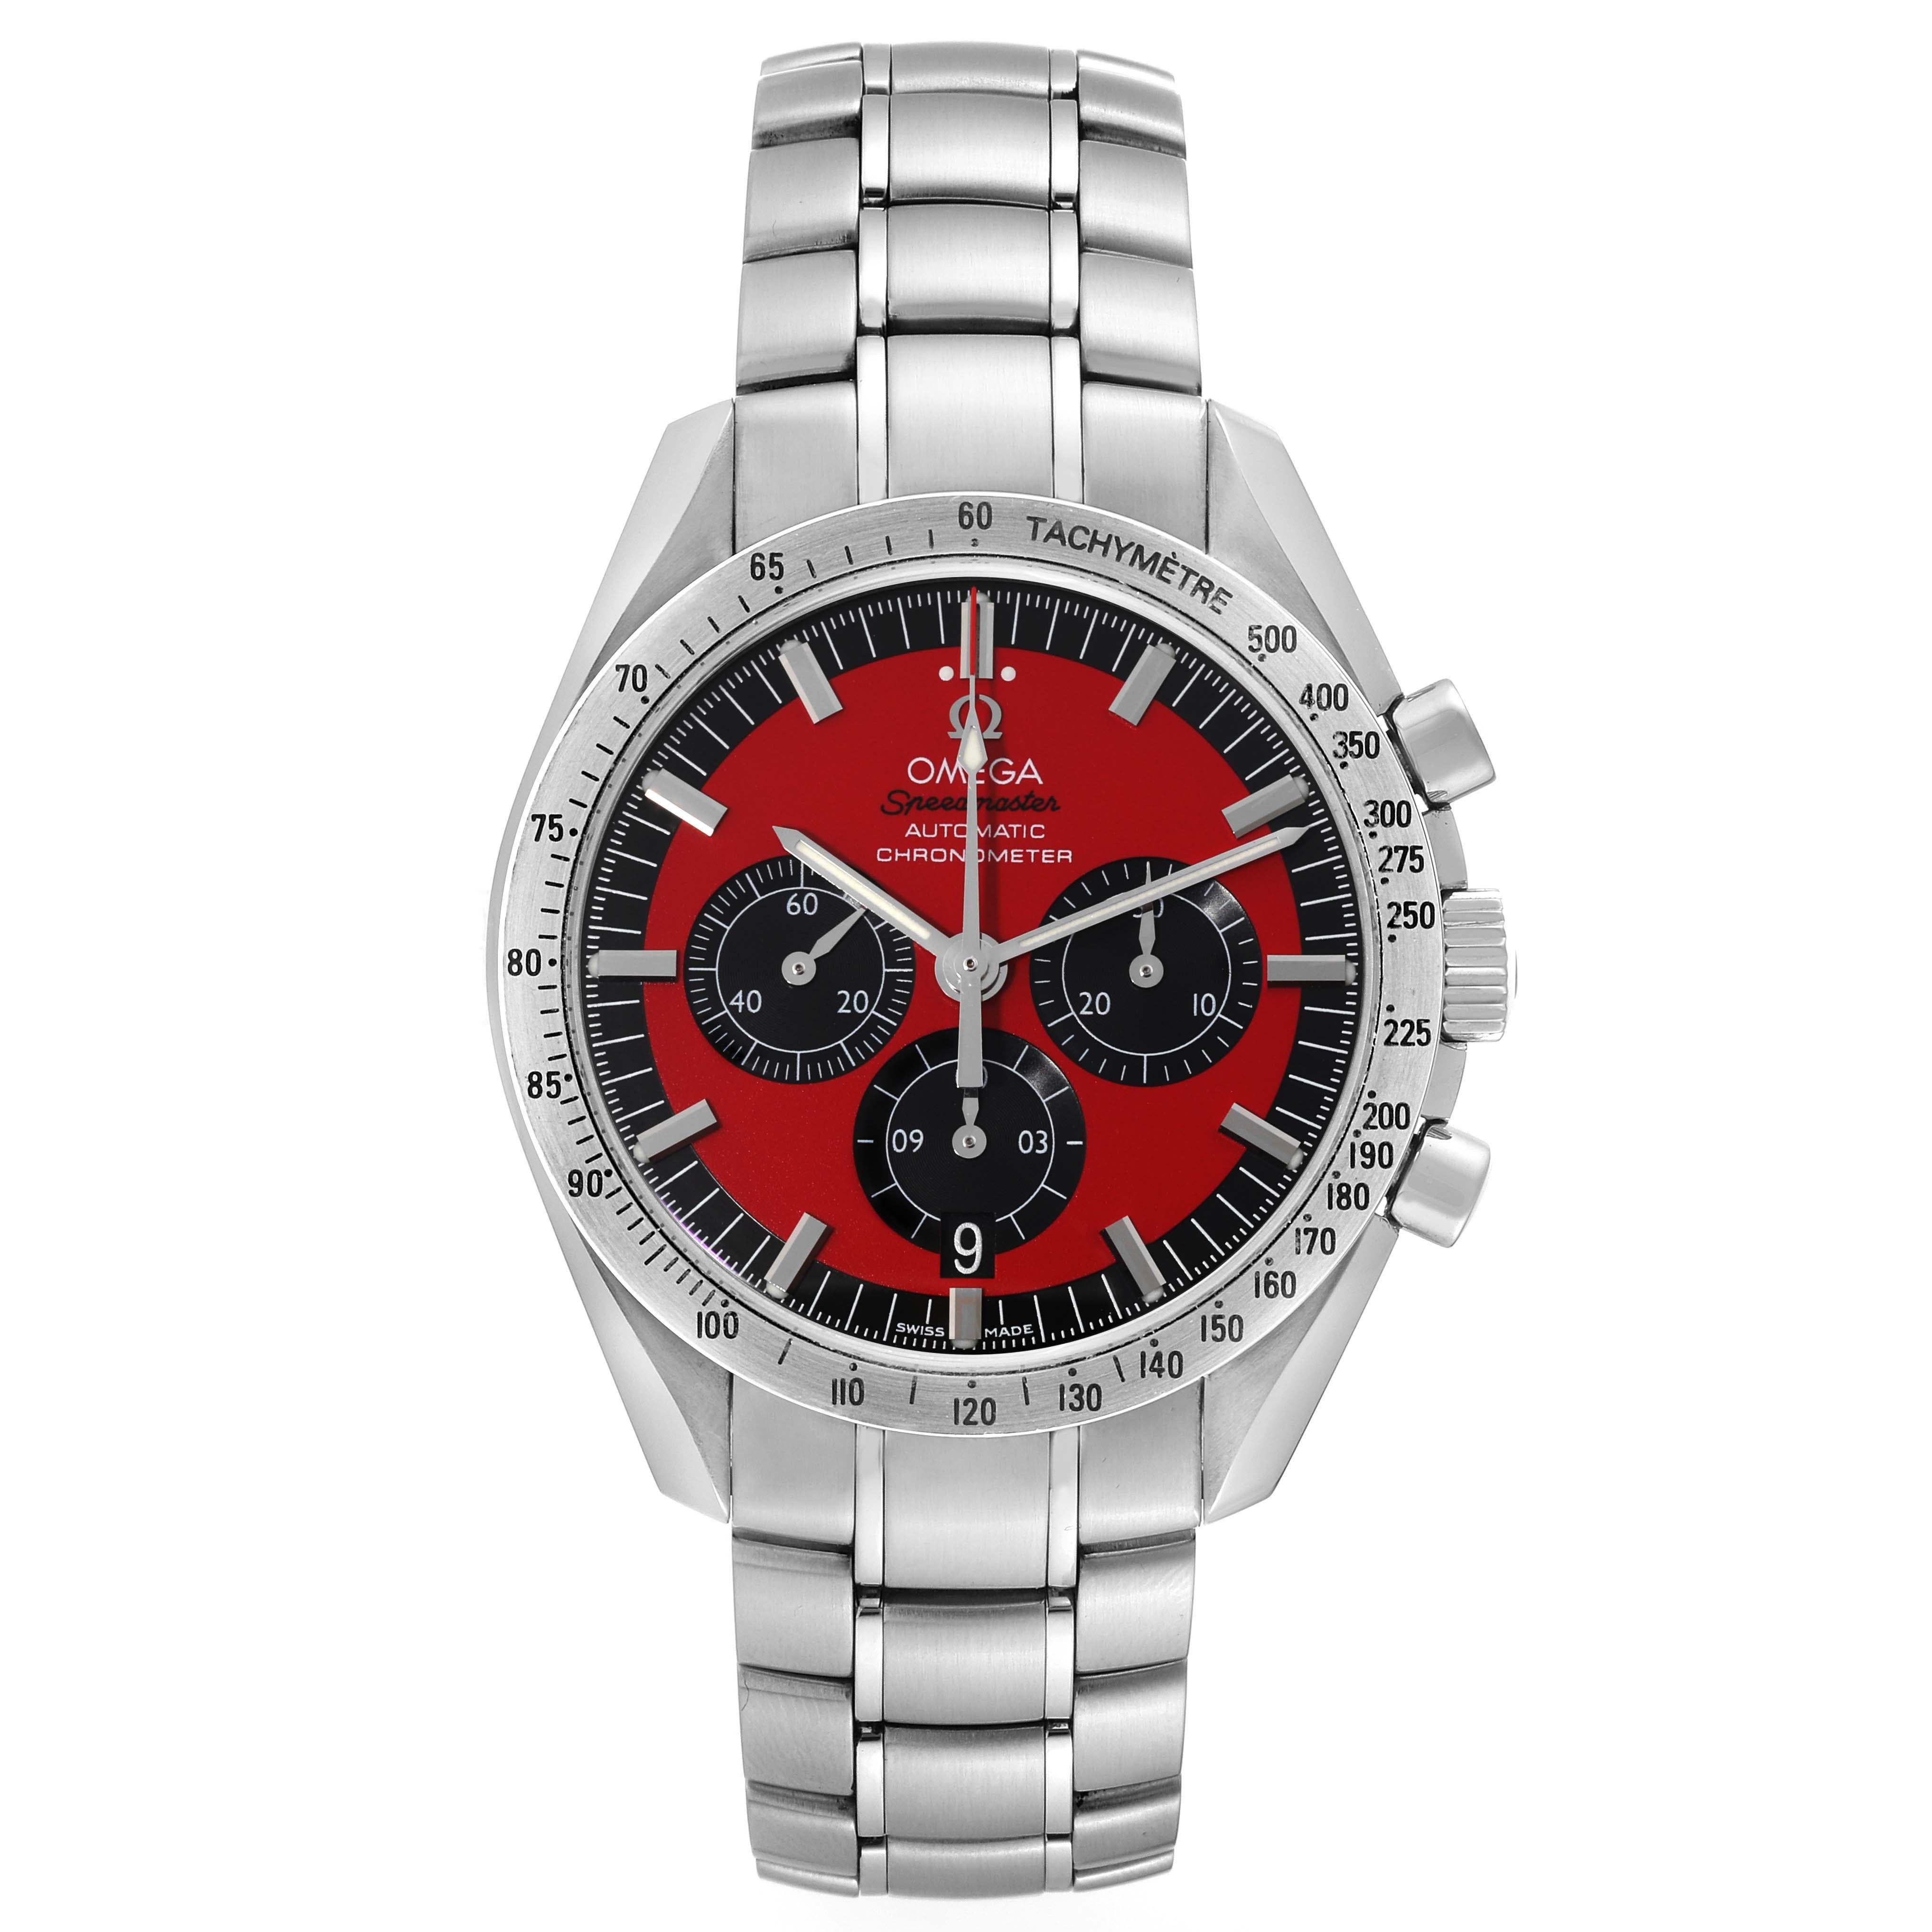 Omega Speedmaster Schumacher Legend Red Limited Edition Steel Mens Watch 3506.61.00. Mouvement chronographe automatique à remontage automatique. Boîtier rond en acier inoxydable de 42.0 mm de diamètre. Lunette en acier inoxydable avec fonction